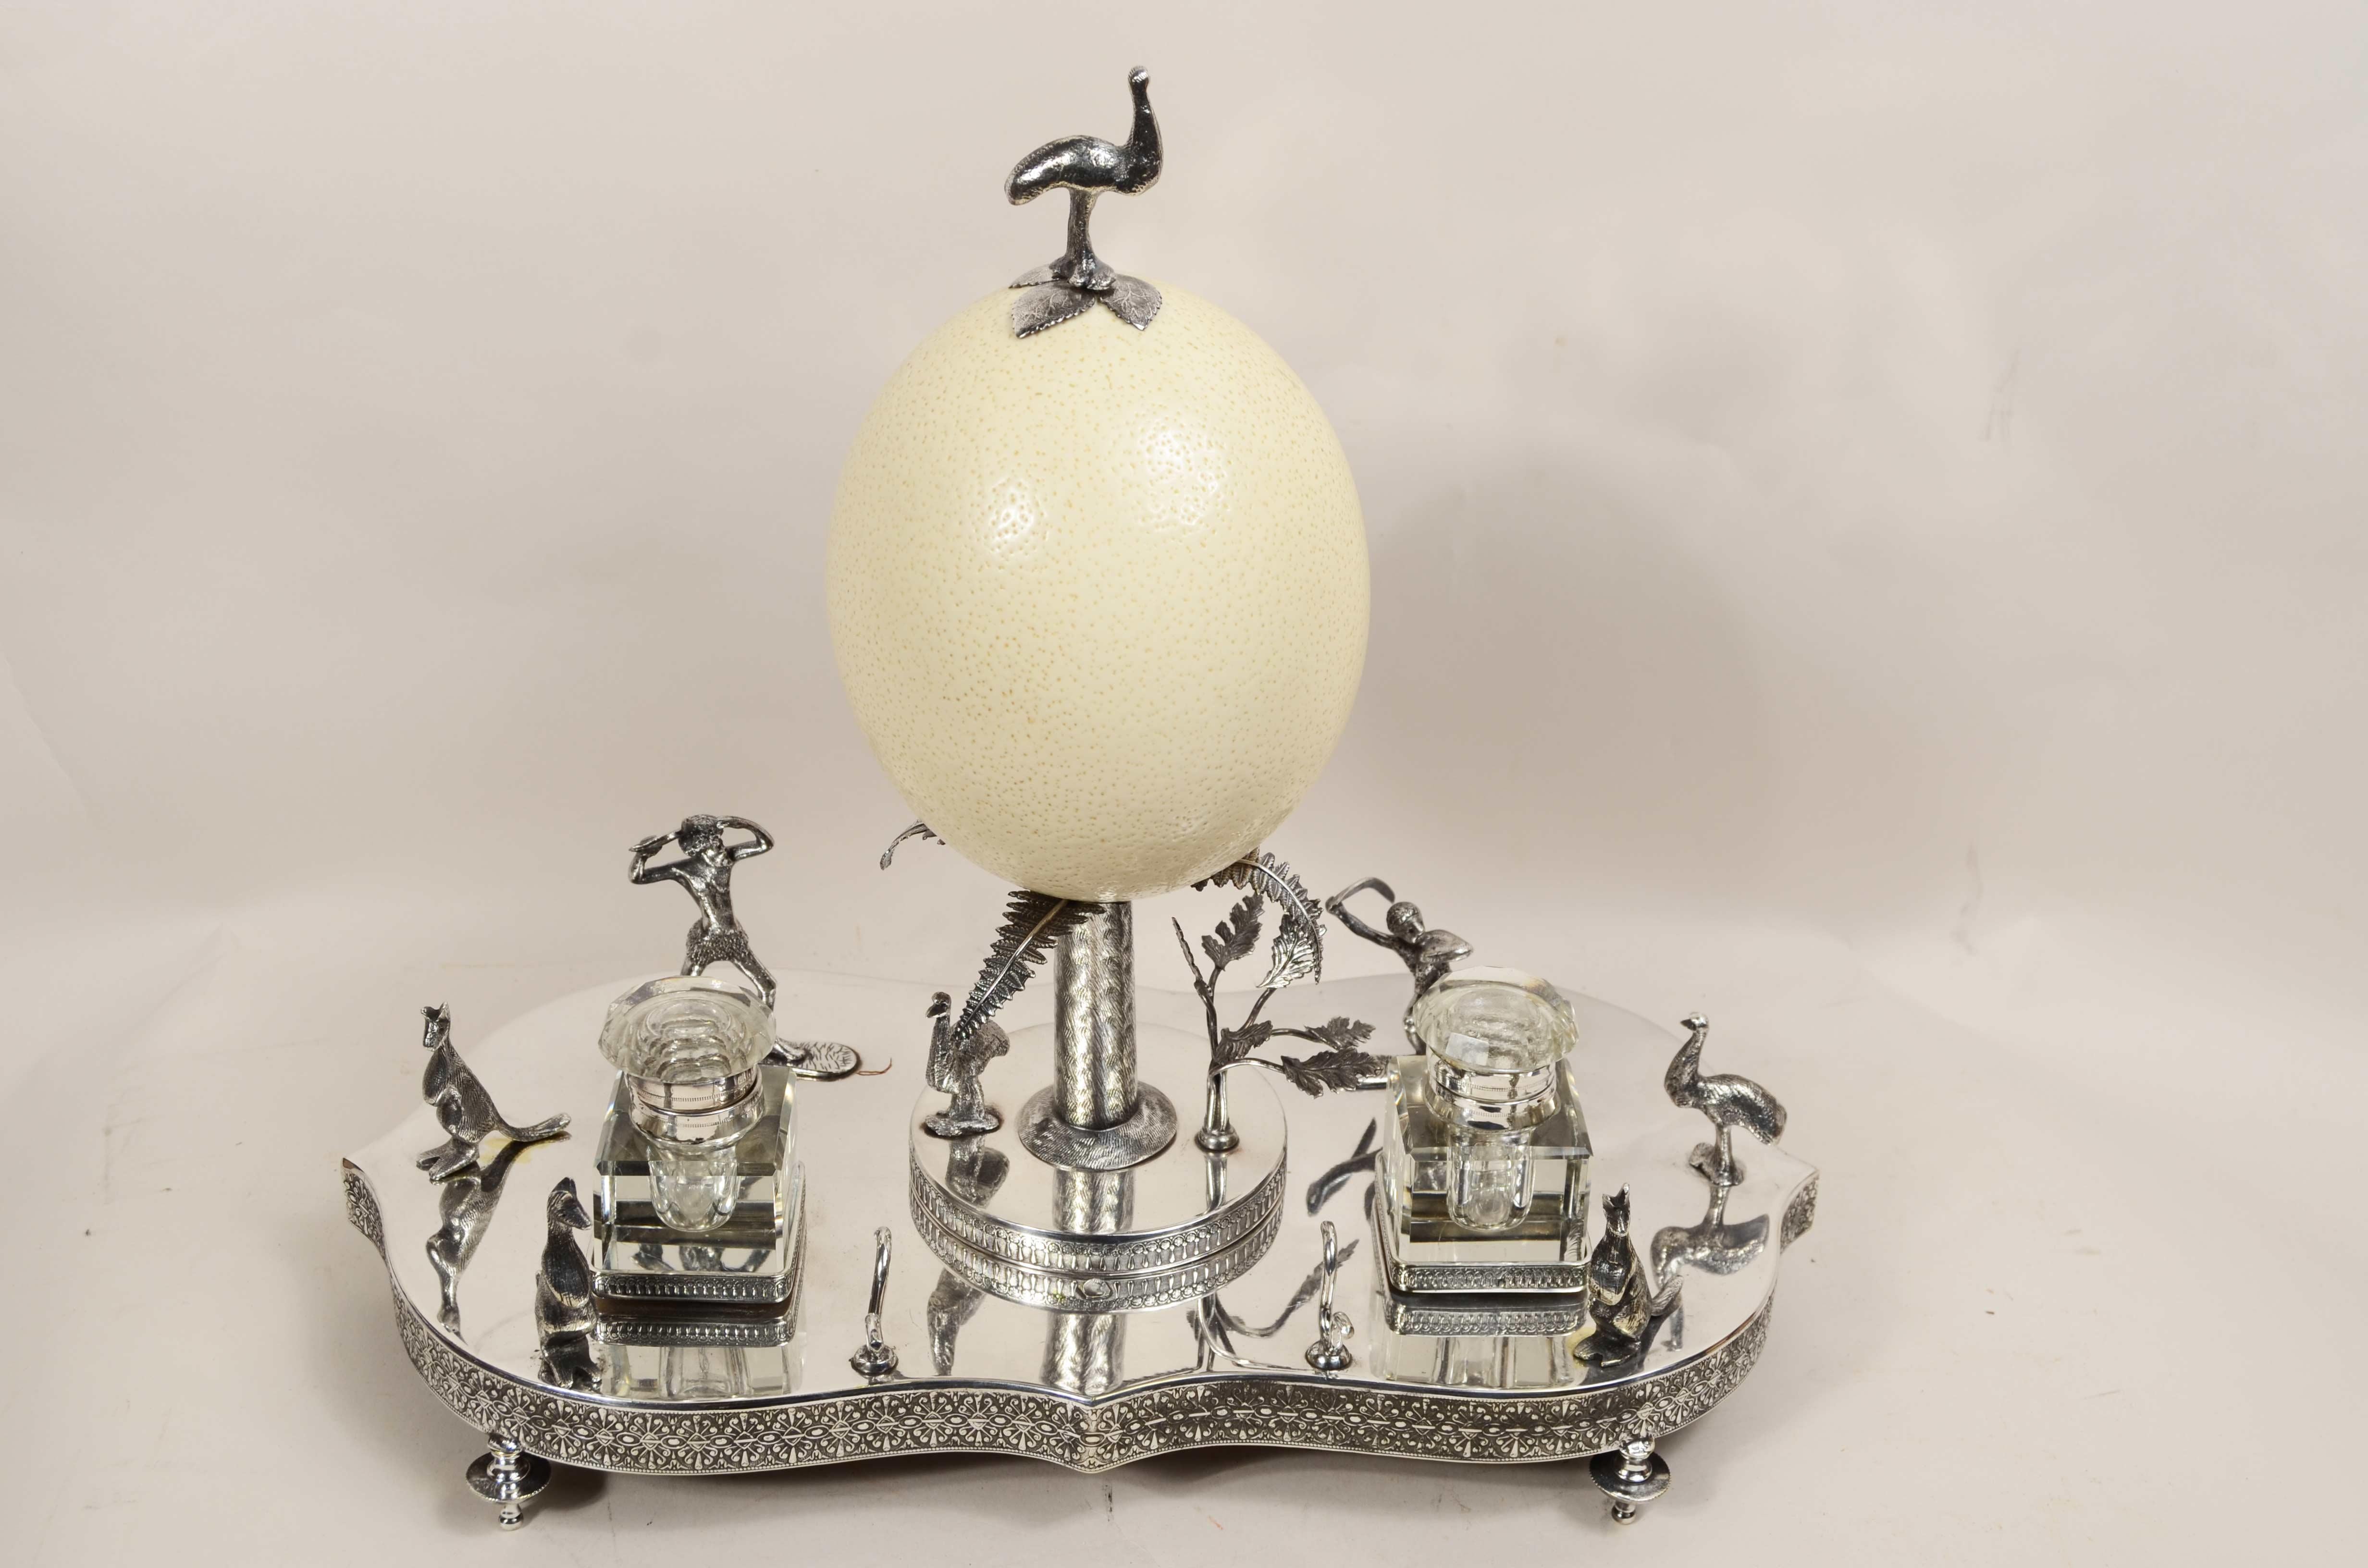 Silbernes Tintenfass aus dem viktorianischen Zeitalter der Wunderkammer, das  präsentiert  in der Mitte des Tabletts eine Palme aus dem  geschnittener Baumstamm, auf dem auf vier Palmenblättern ein australisches Emu-Ei ruht, das wiederum von einem